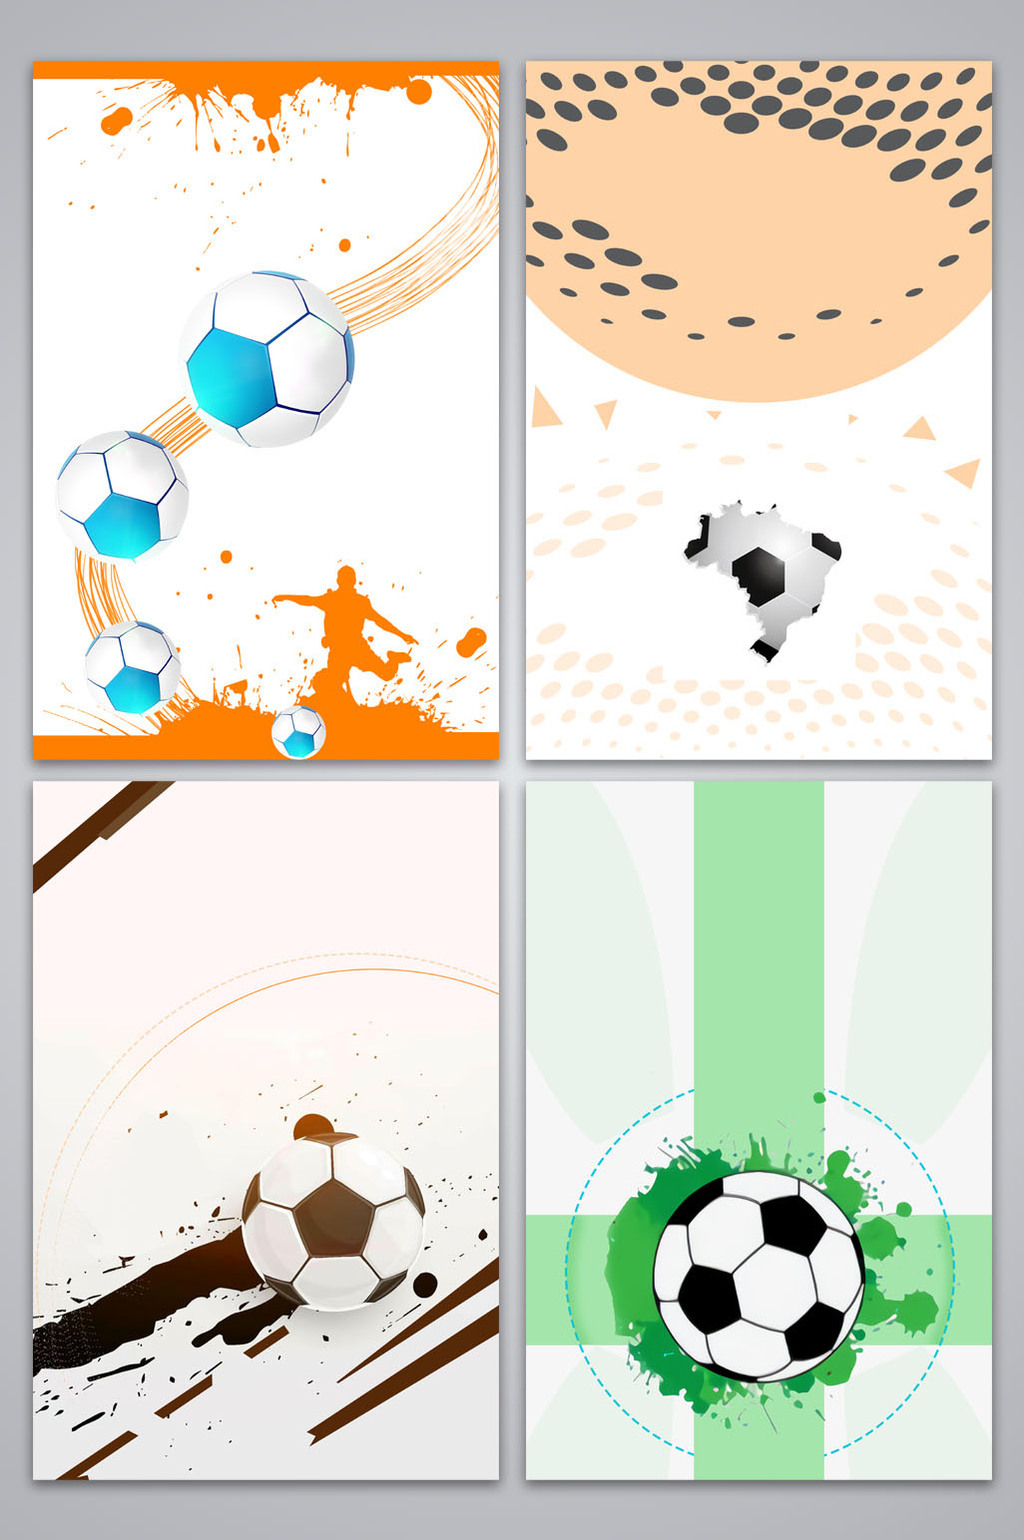 包图网提供精美好看的手绘足球运动海报背景图素材免费下载,本次作品